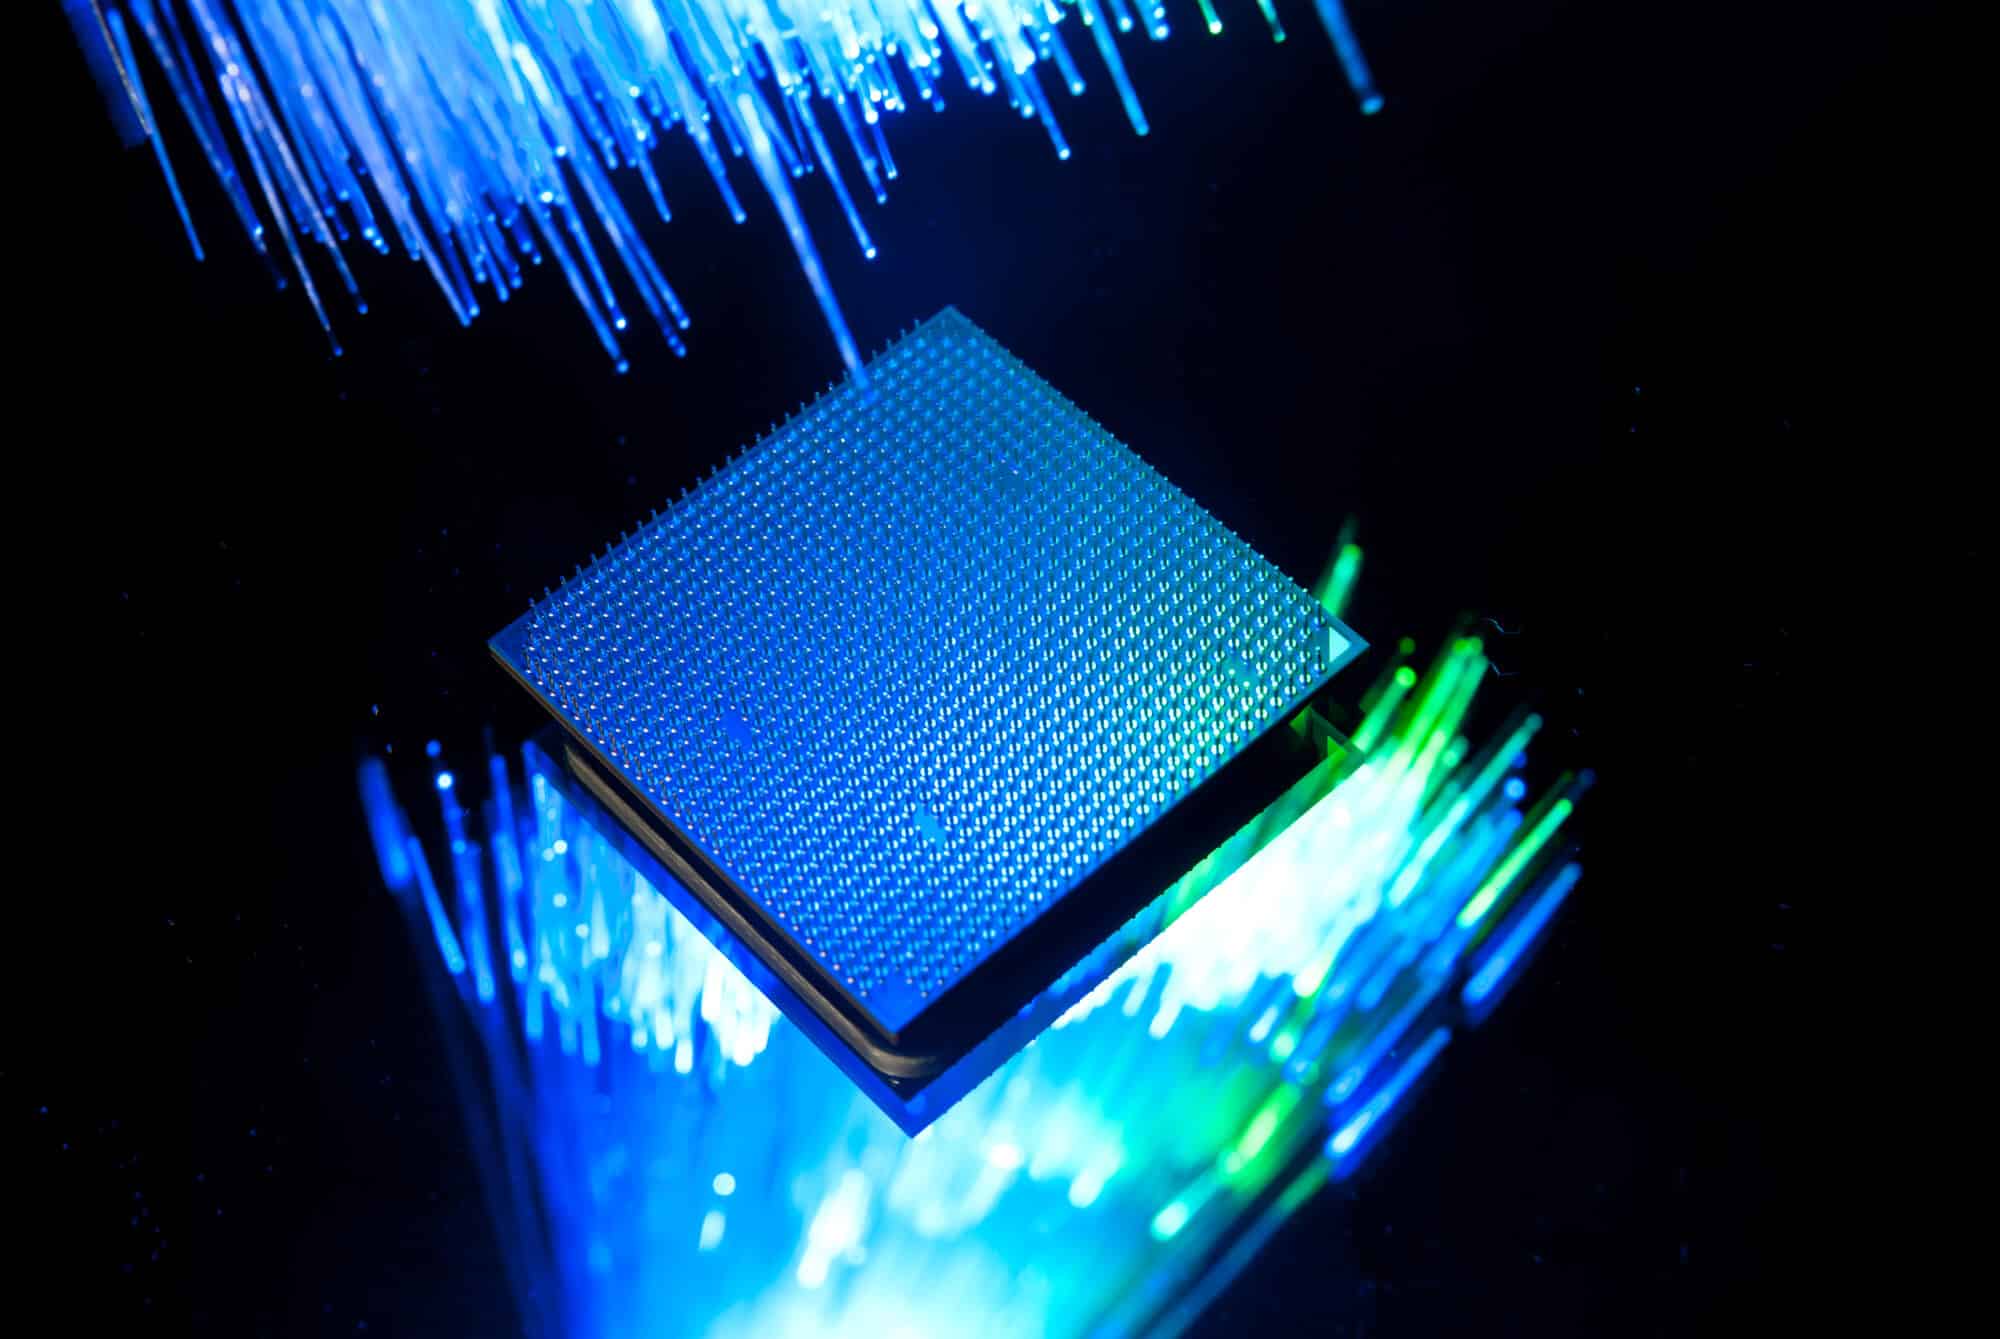 Illustrative optical chip: depositphotos.com